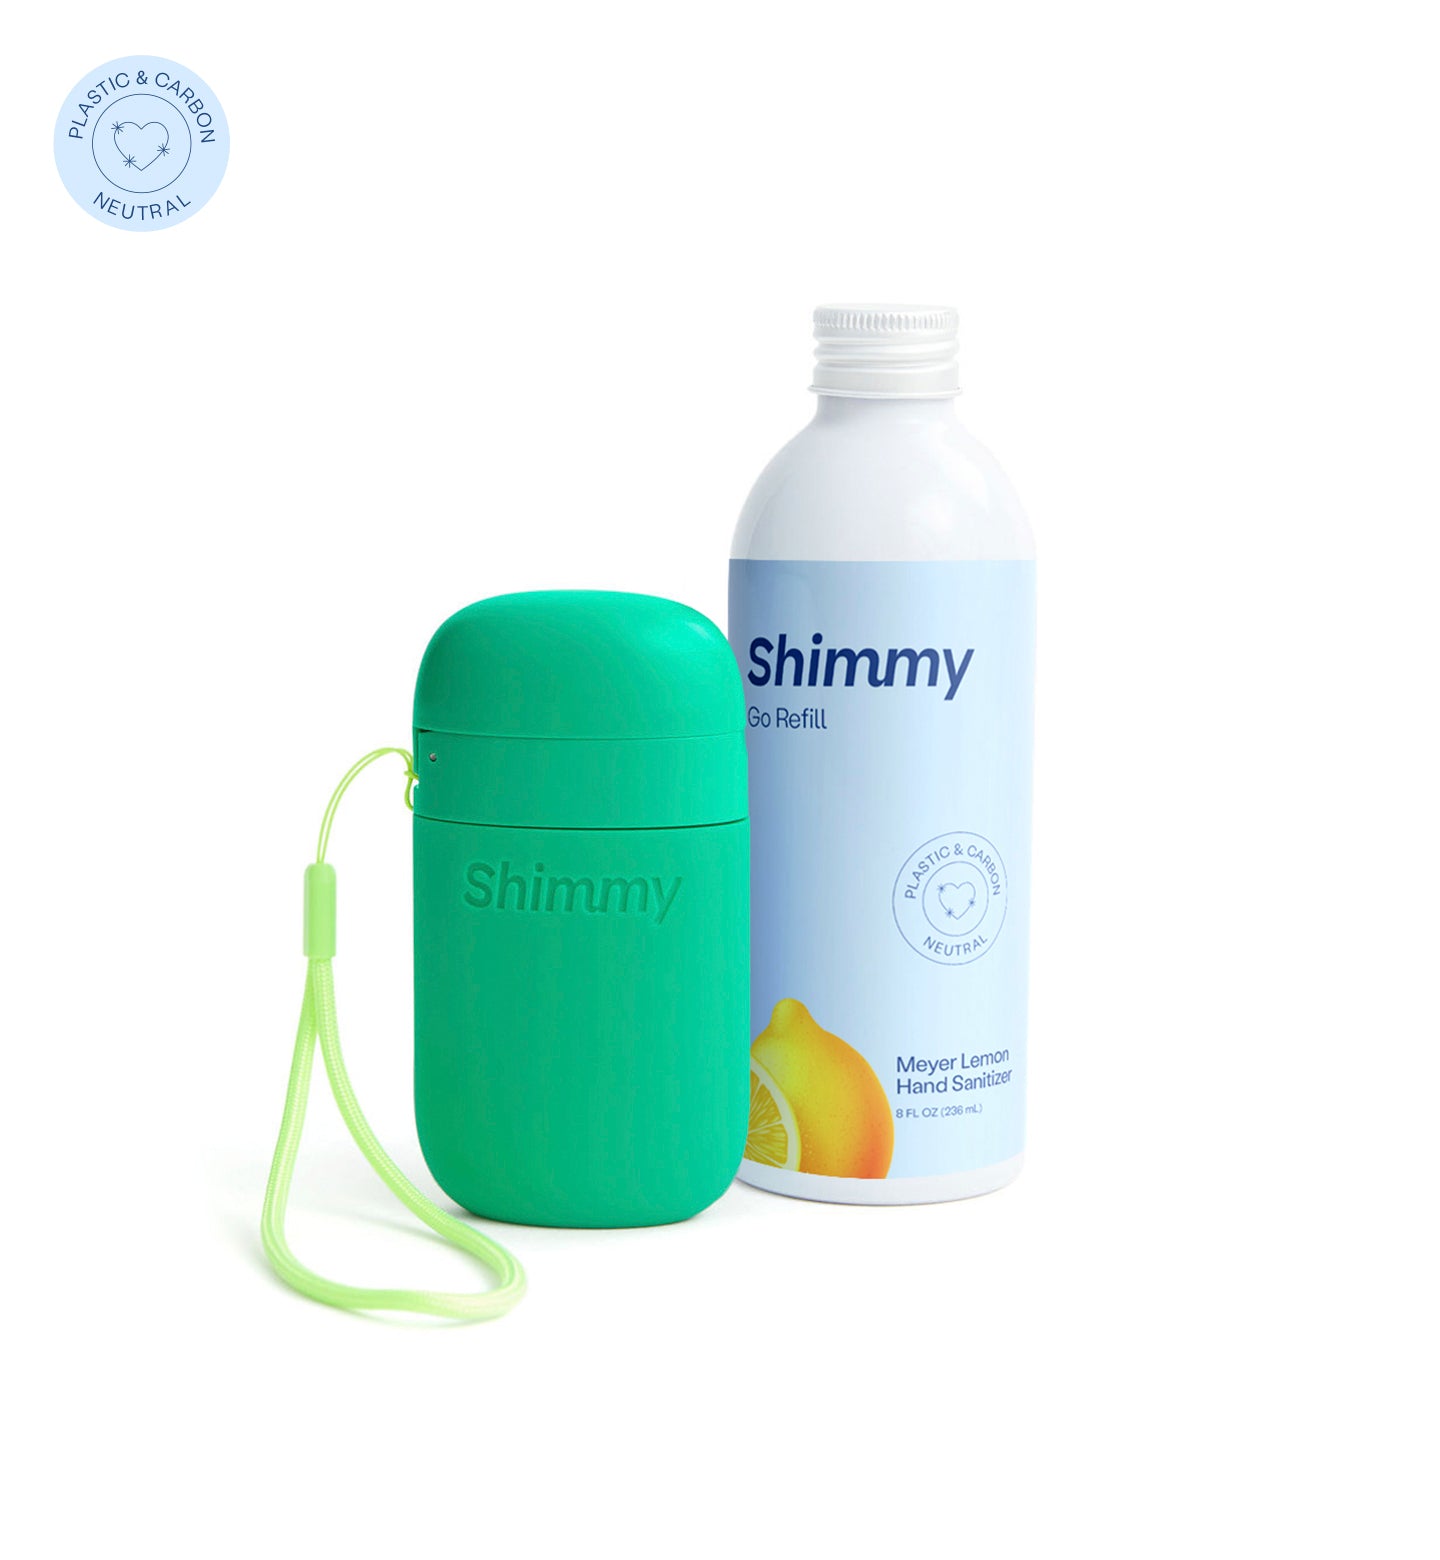 Shimmy Go Portable Hand Sanitizer Dispenser Kelly Green + Meyer Lemon Hand Sanitizer [40734807359679] - 40734807359679